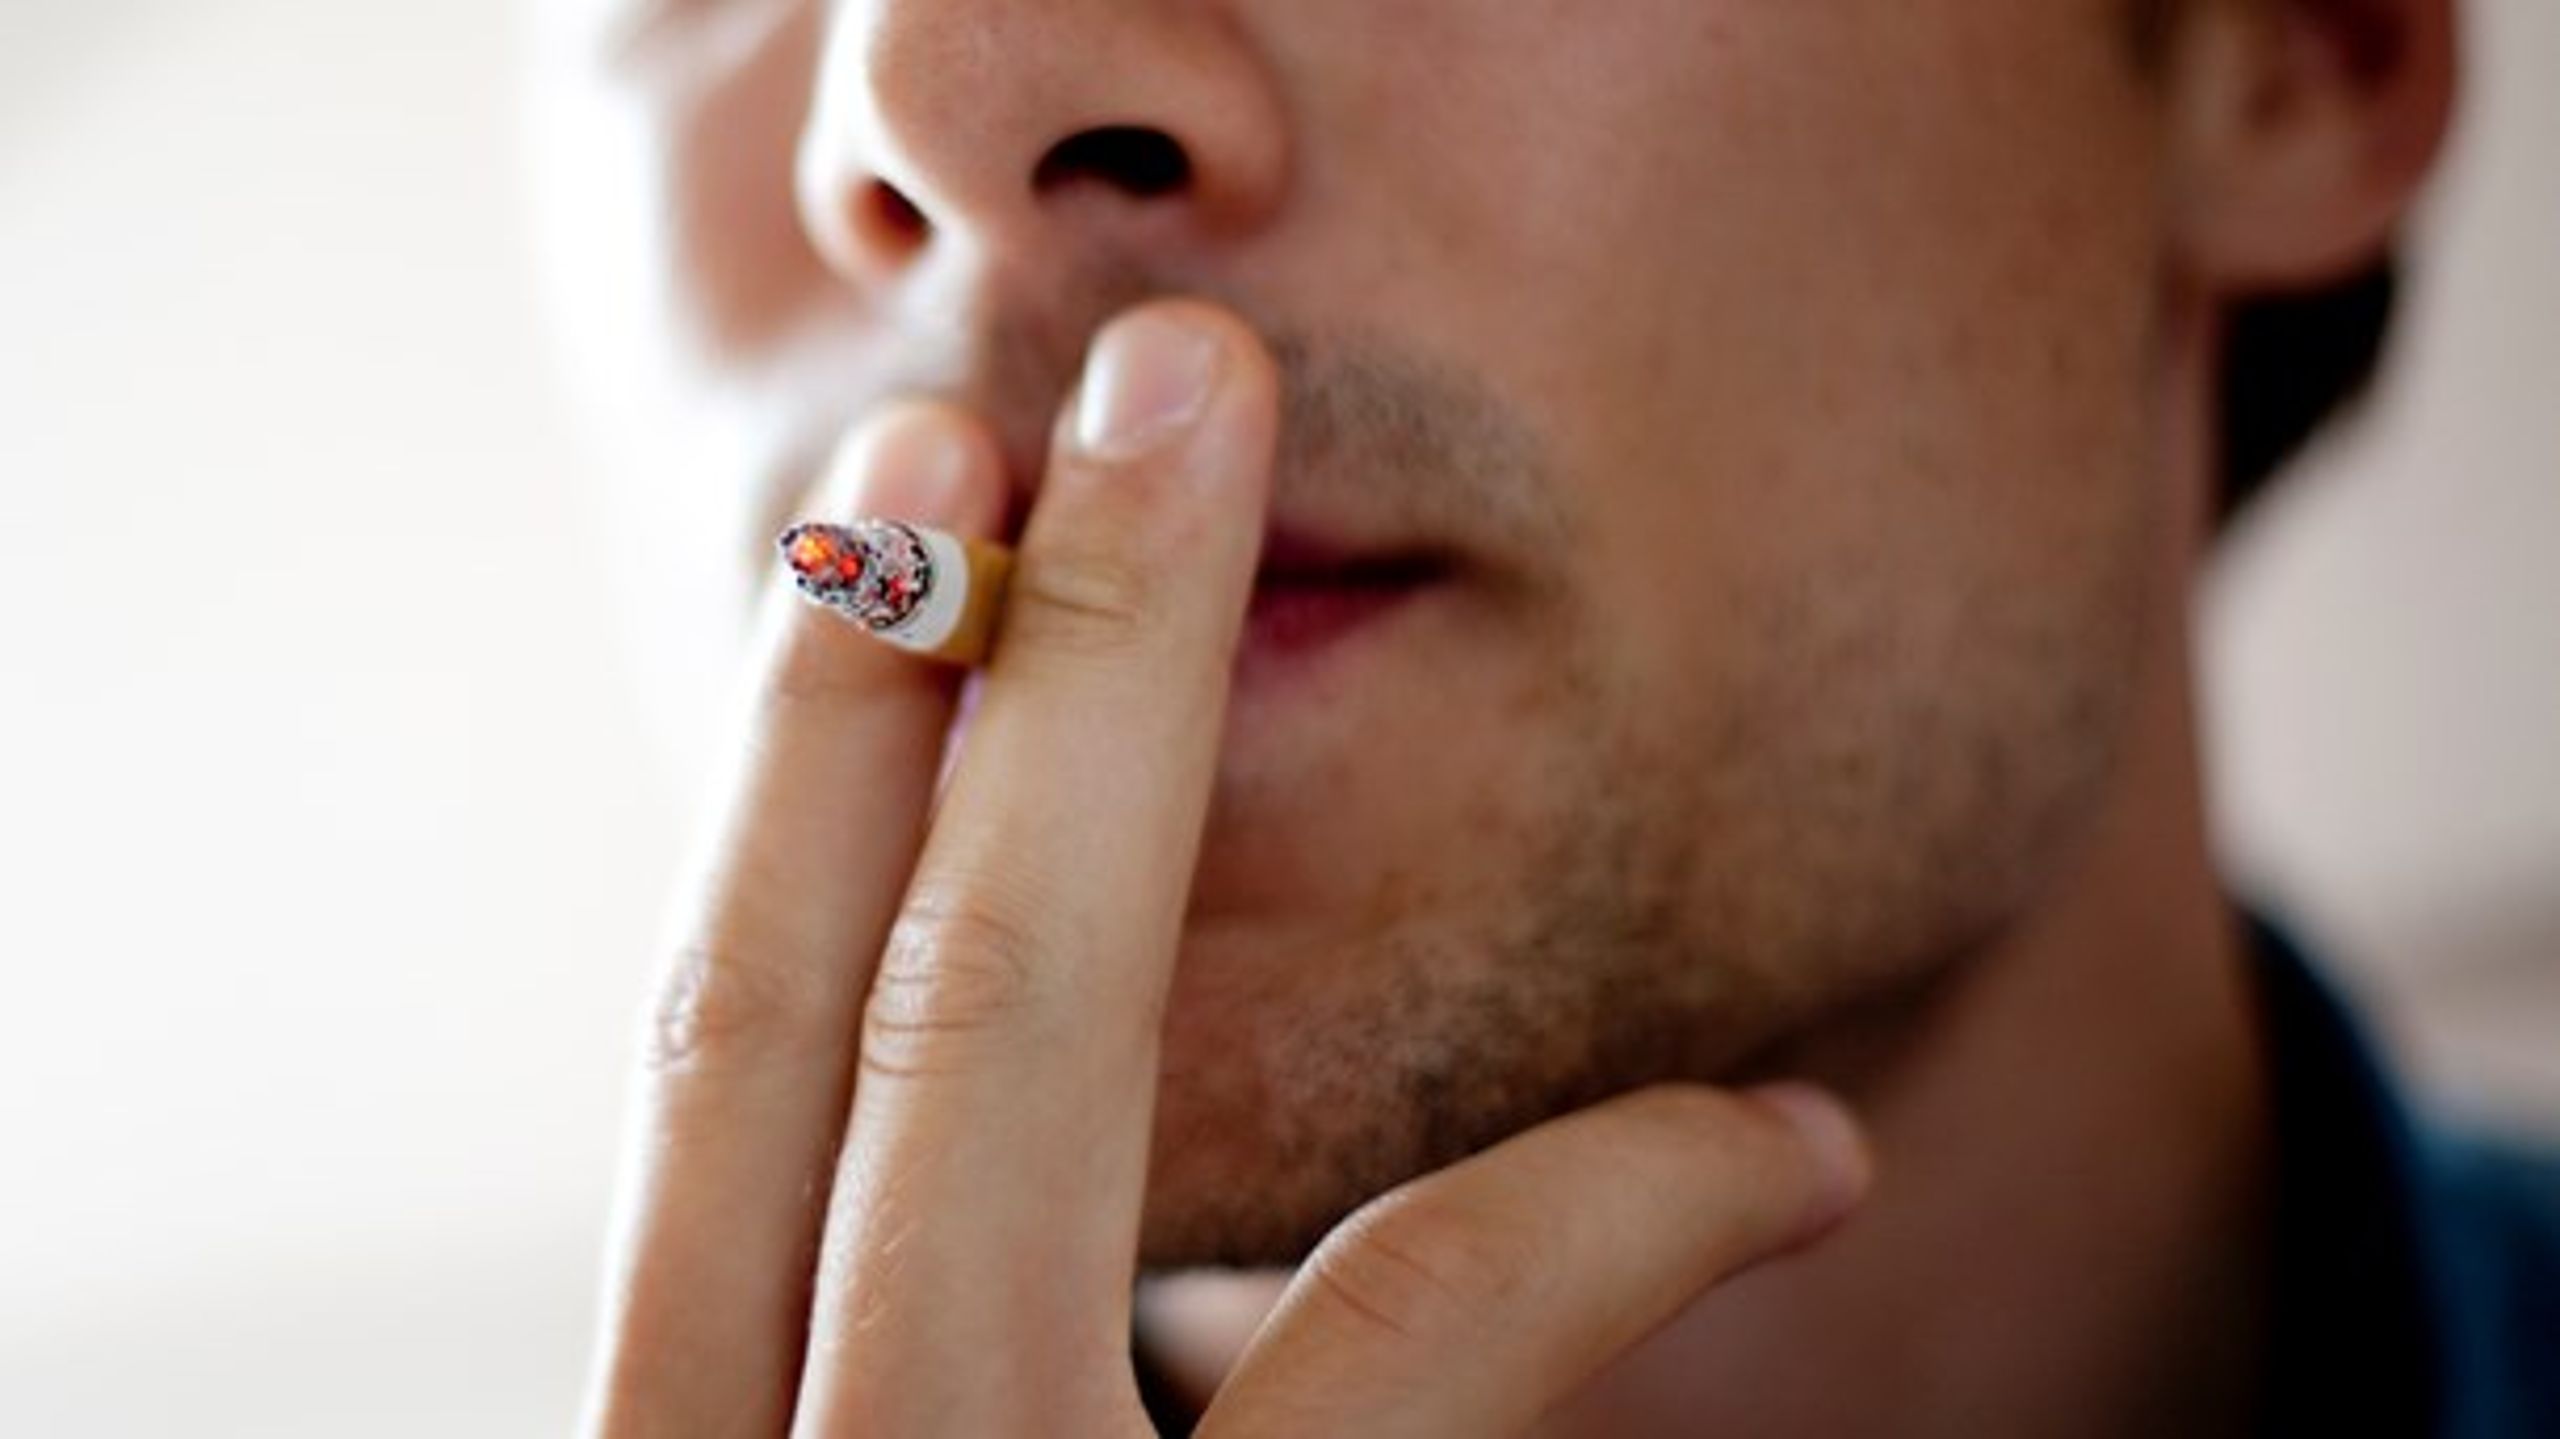 Over de seneste fem år er sket en stigning i antallet af unge rygere. Og politikerne vil vende udviklingen med højere priser.